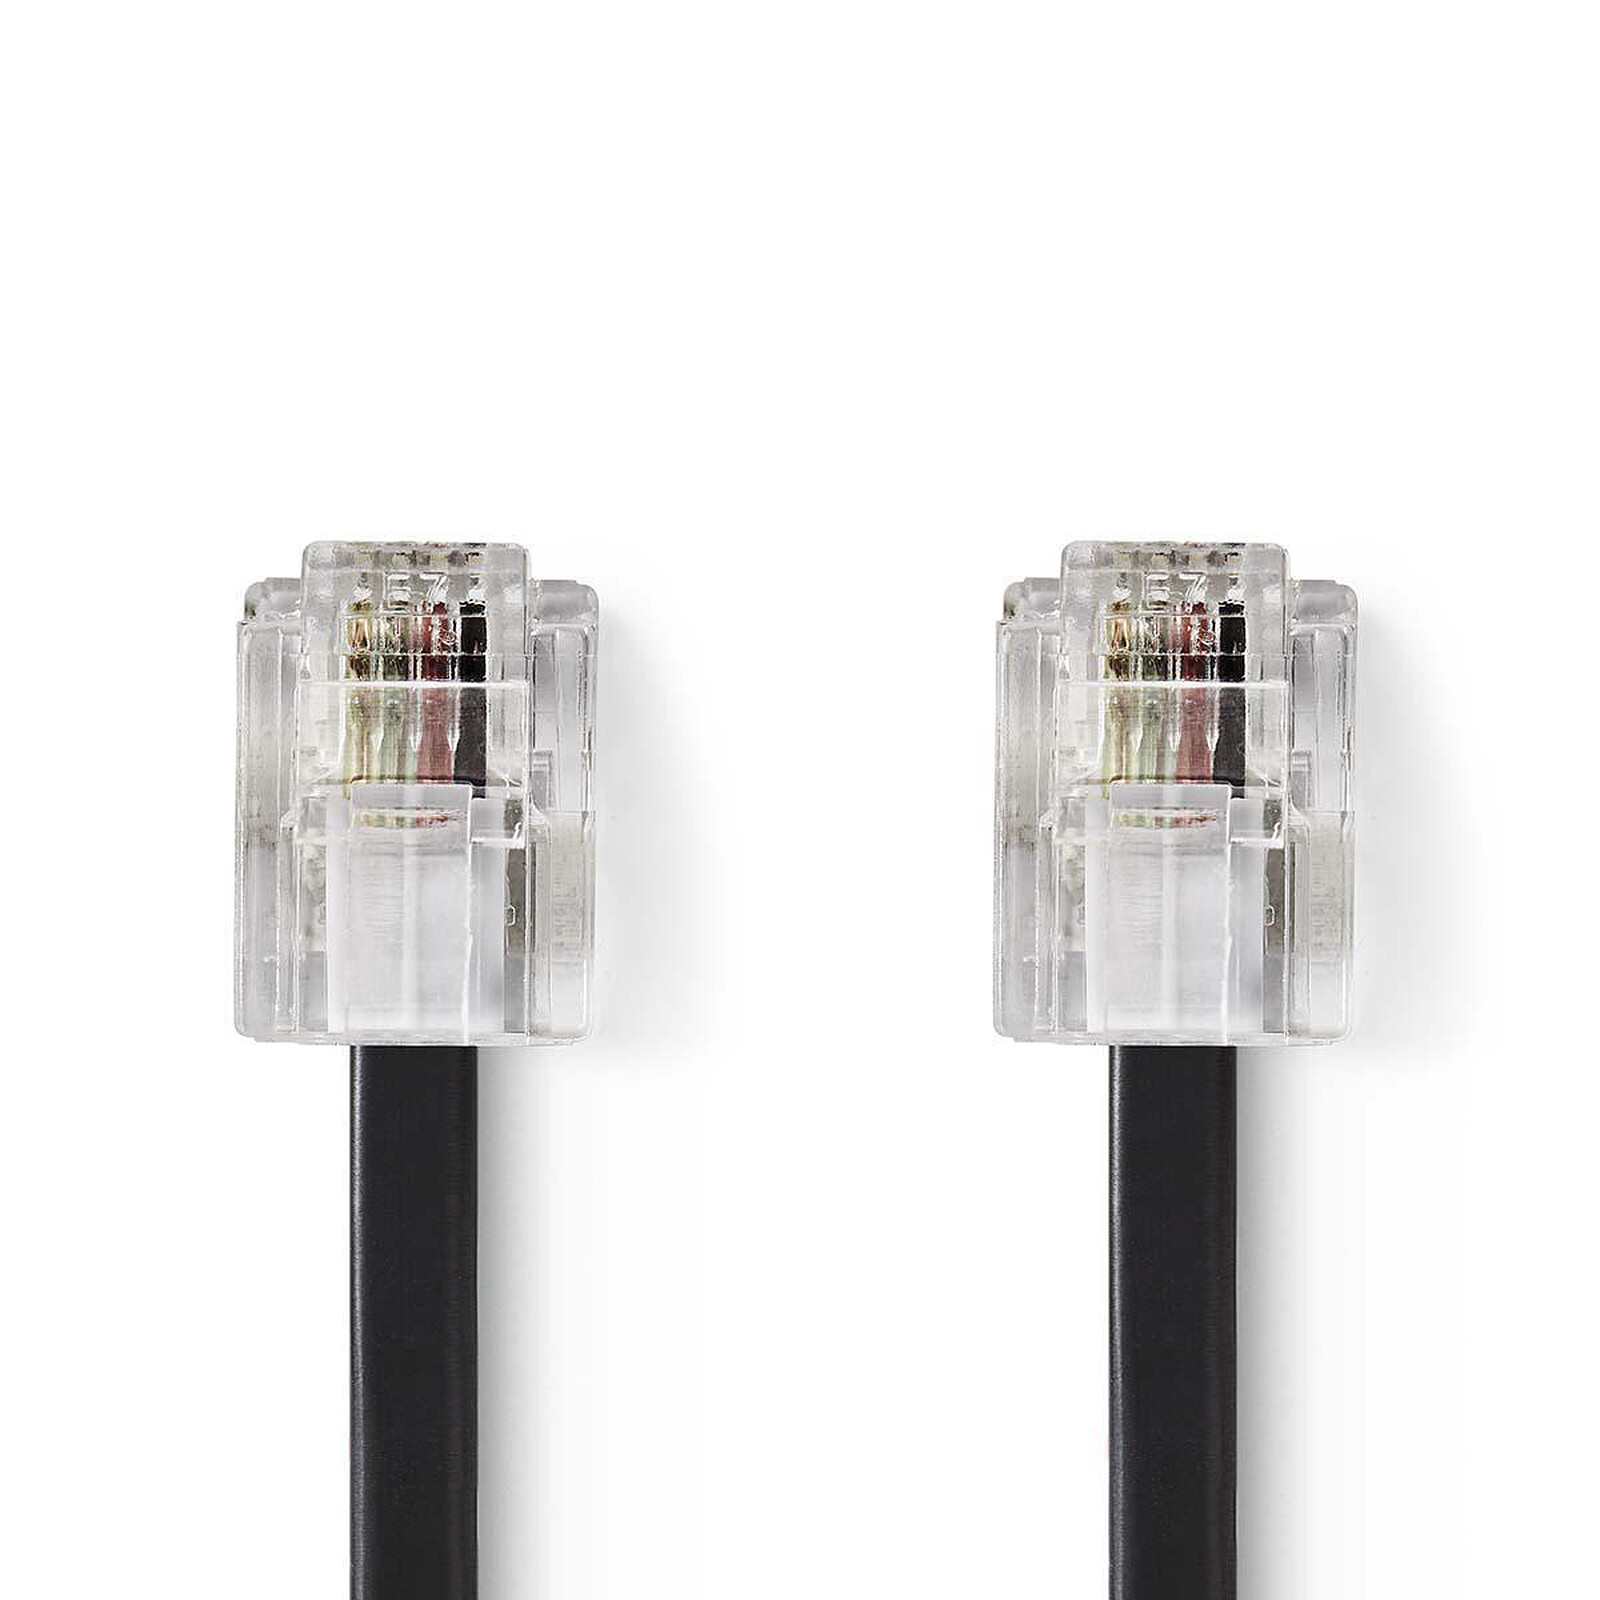 Nedis Câble RJ11 mâle/mâle (2 mètres) - (Noir) - Câble RJ11, RJ9 & RJ12 -  Garantie 3 ans LDLC